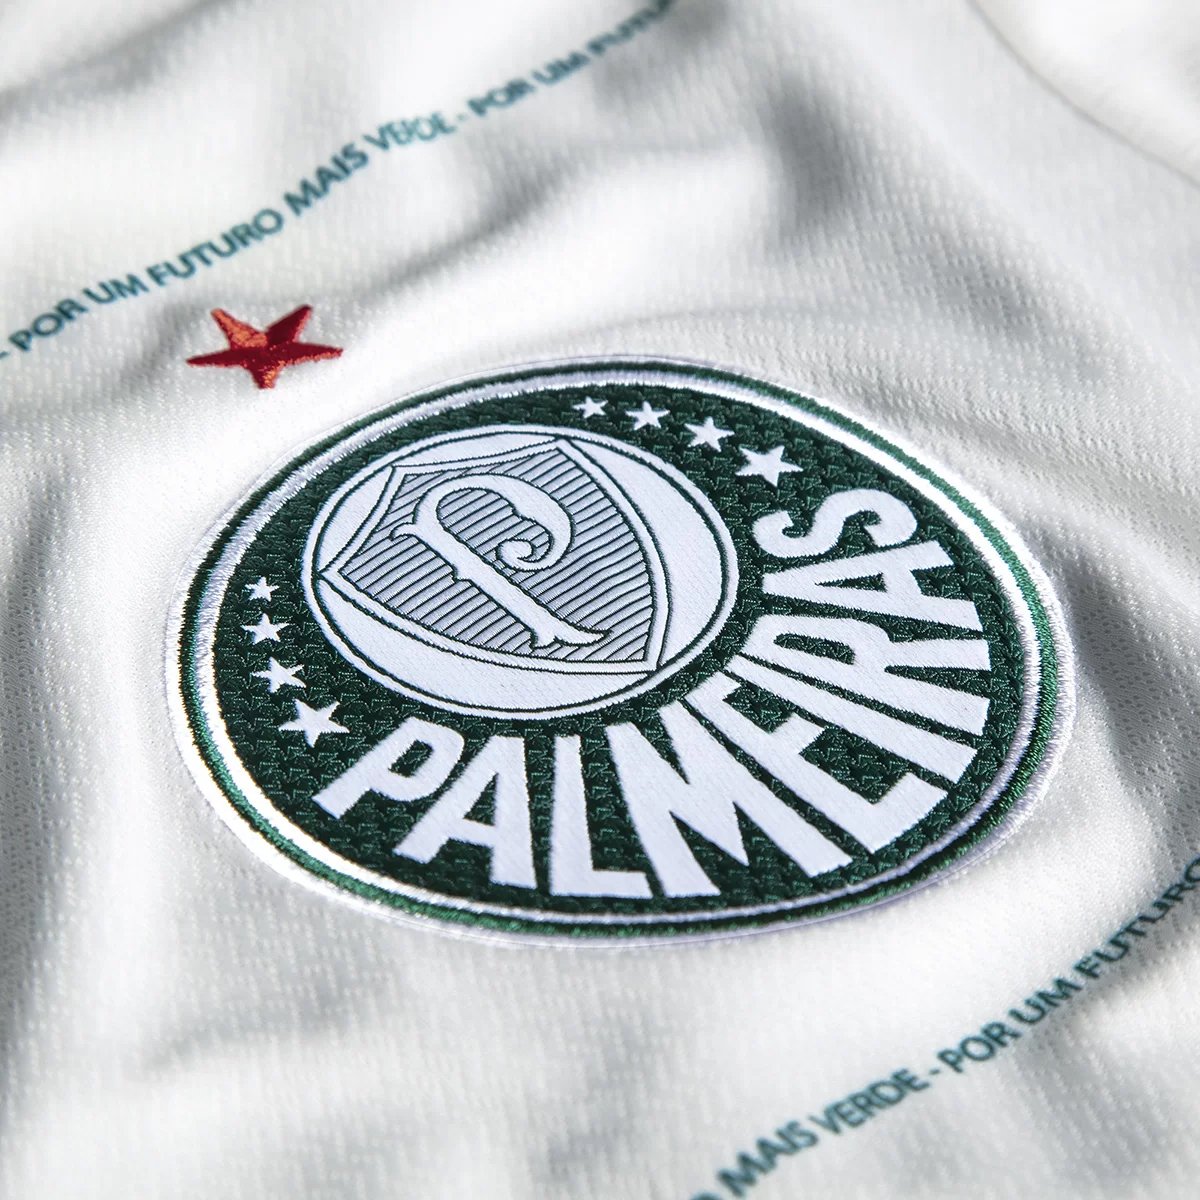 Bola Palmeiras Puma 22/23  Palmeiras - Palmeiras Store